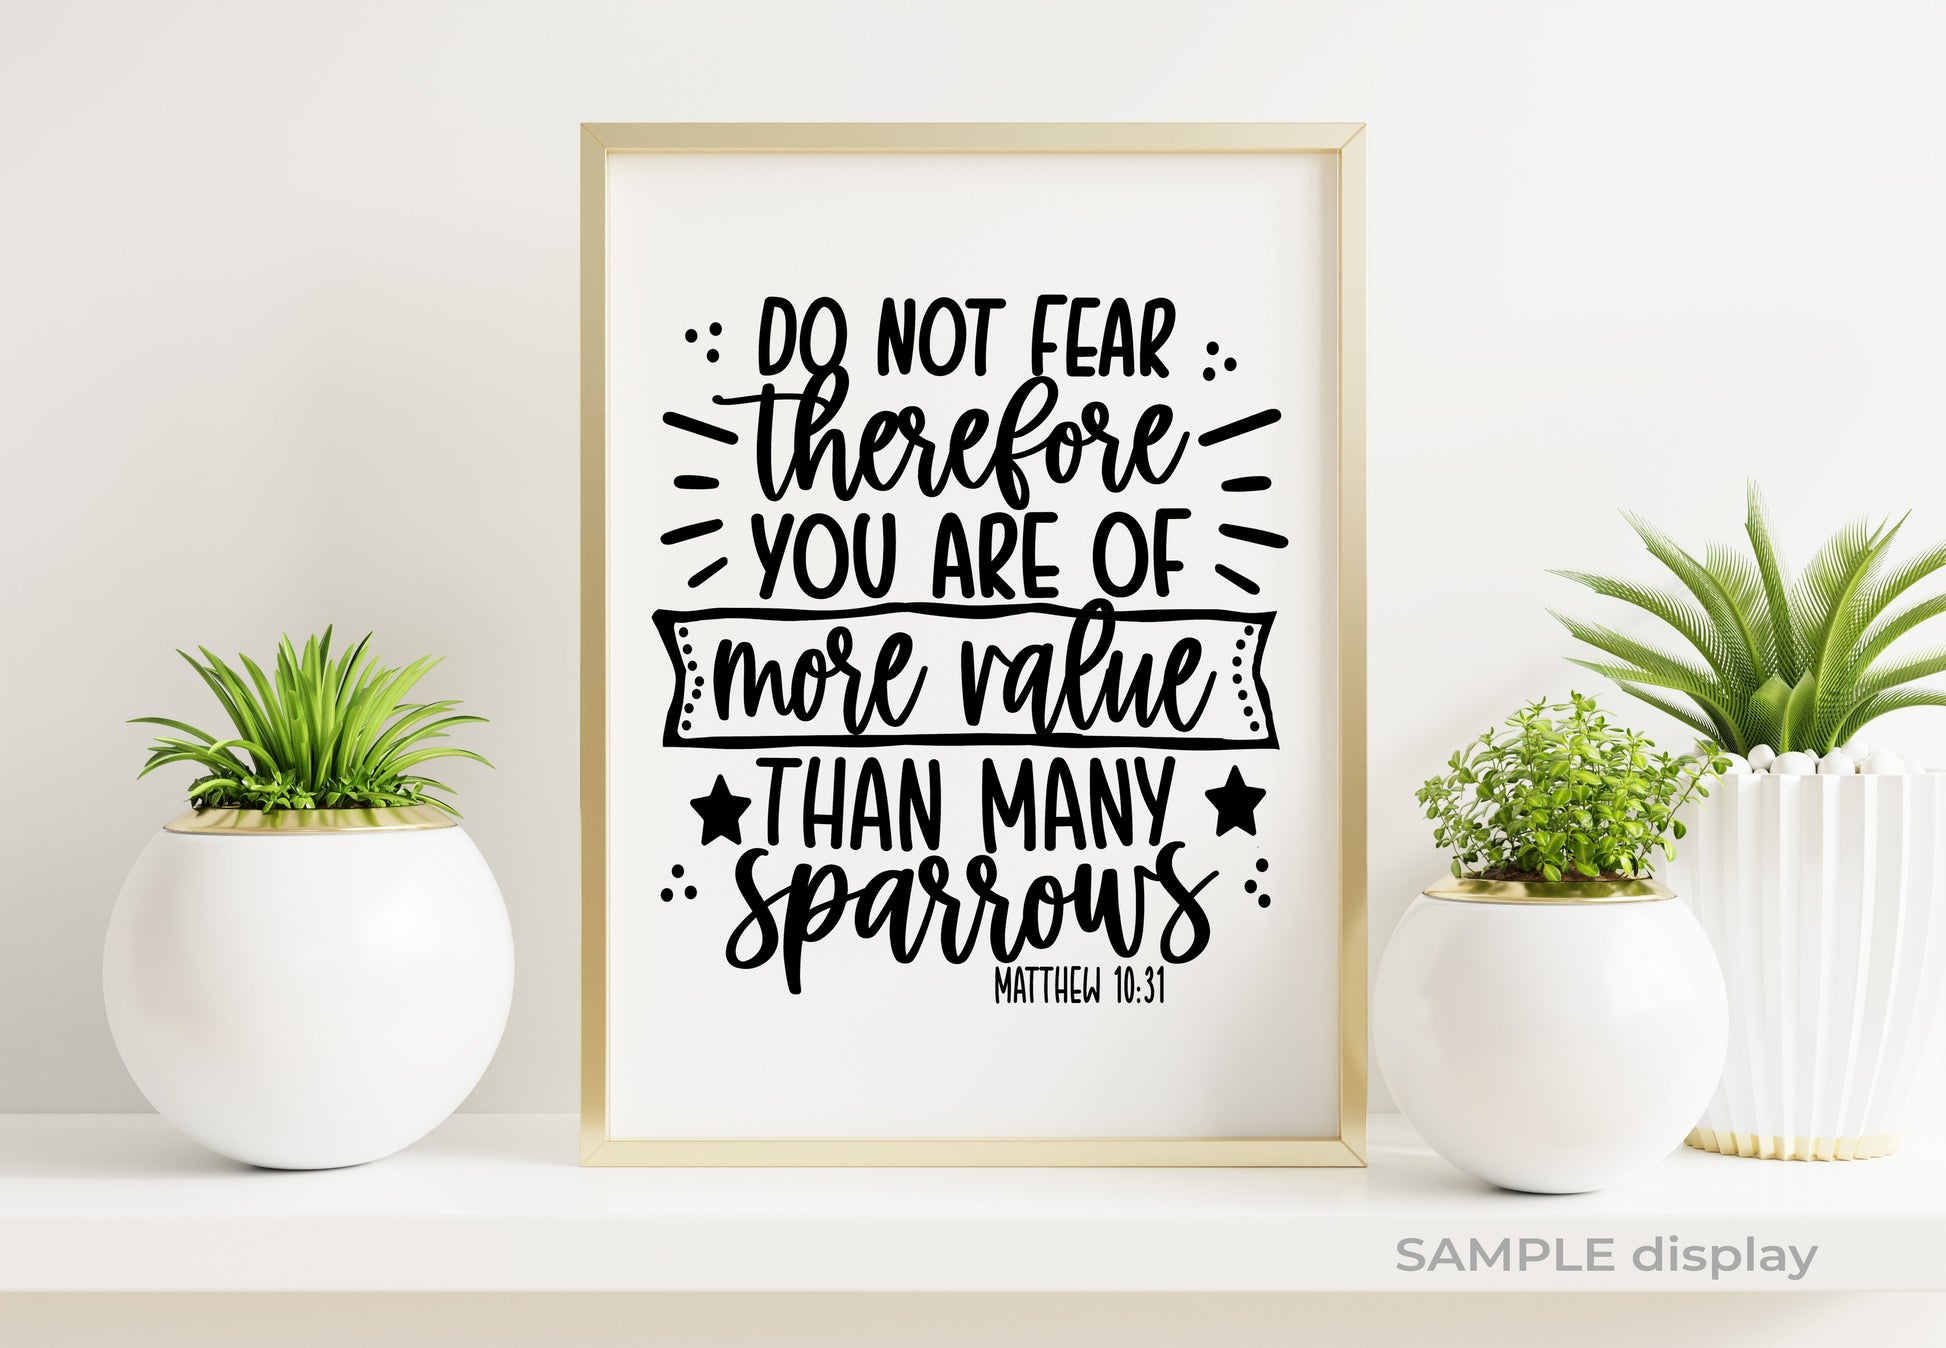 Do Not Fear Bible Verse Word Art.